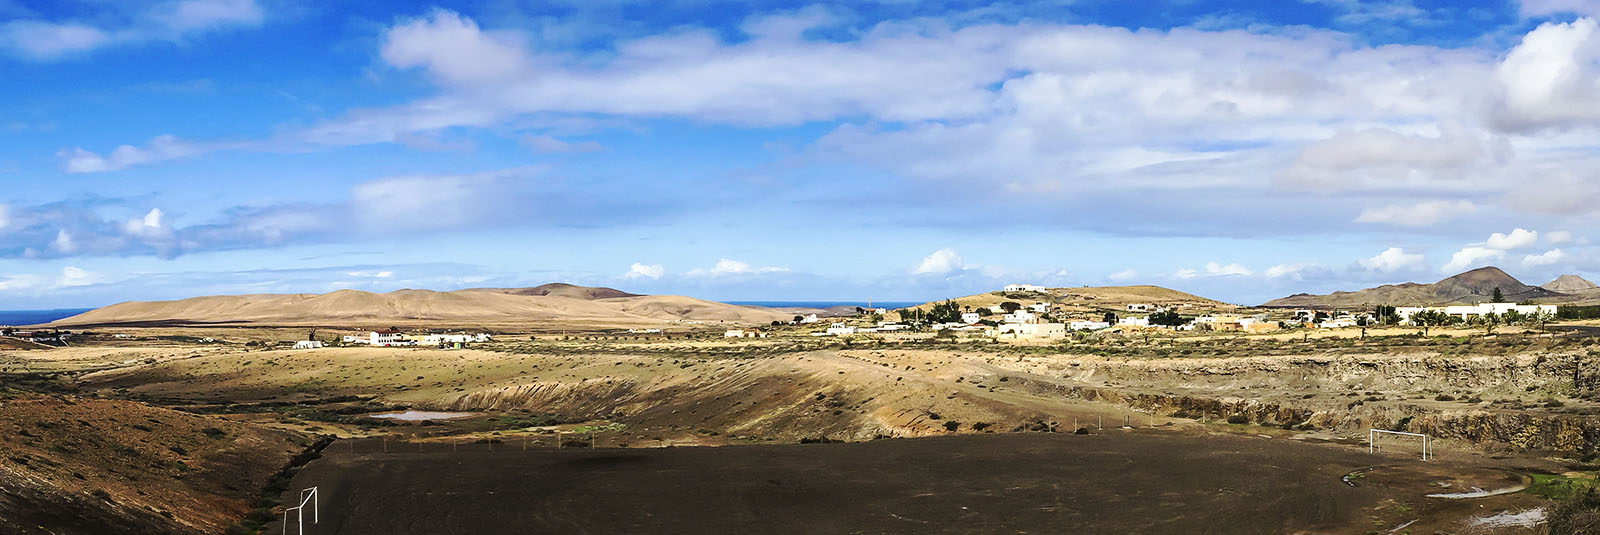 Panorama Tefia Fuerteventura.